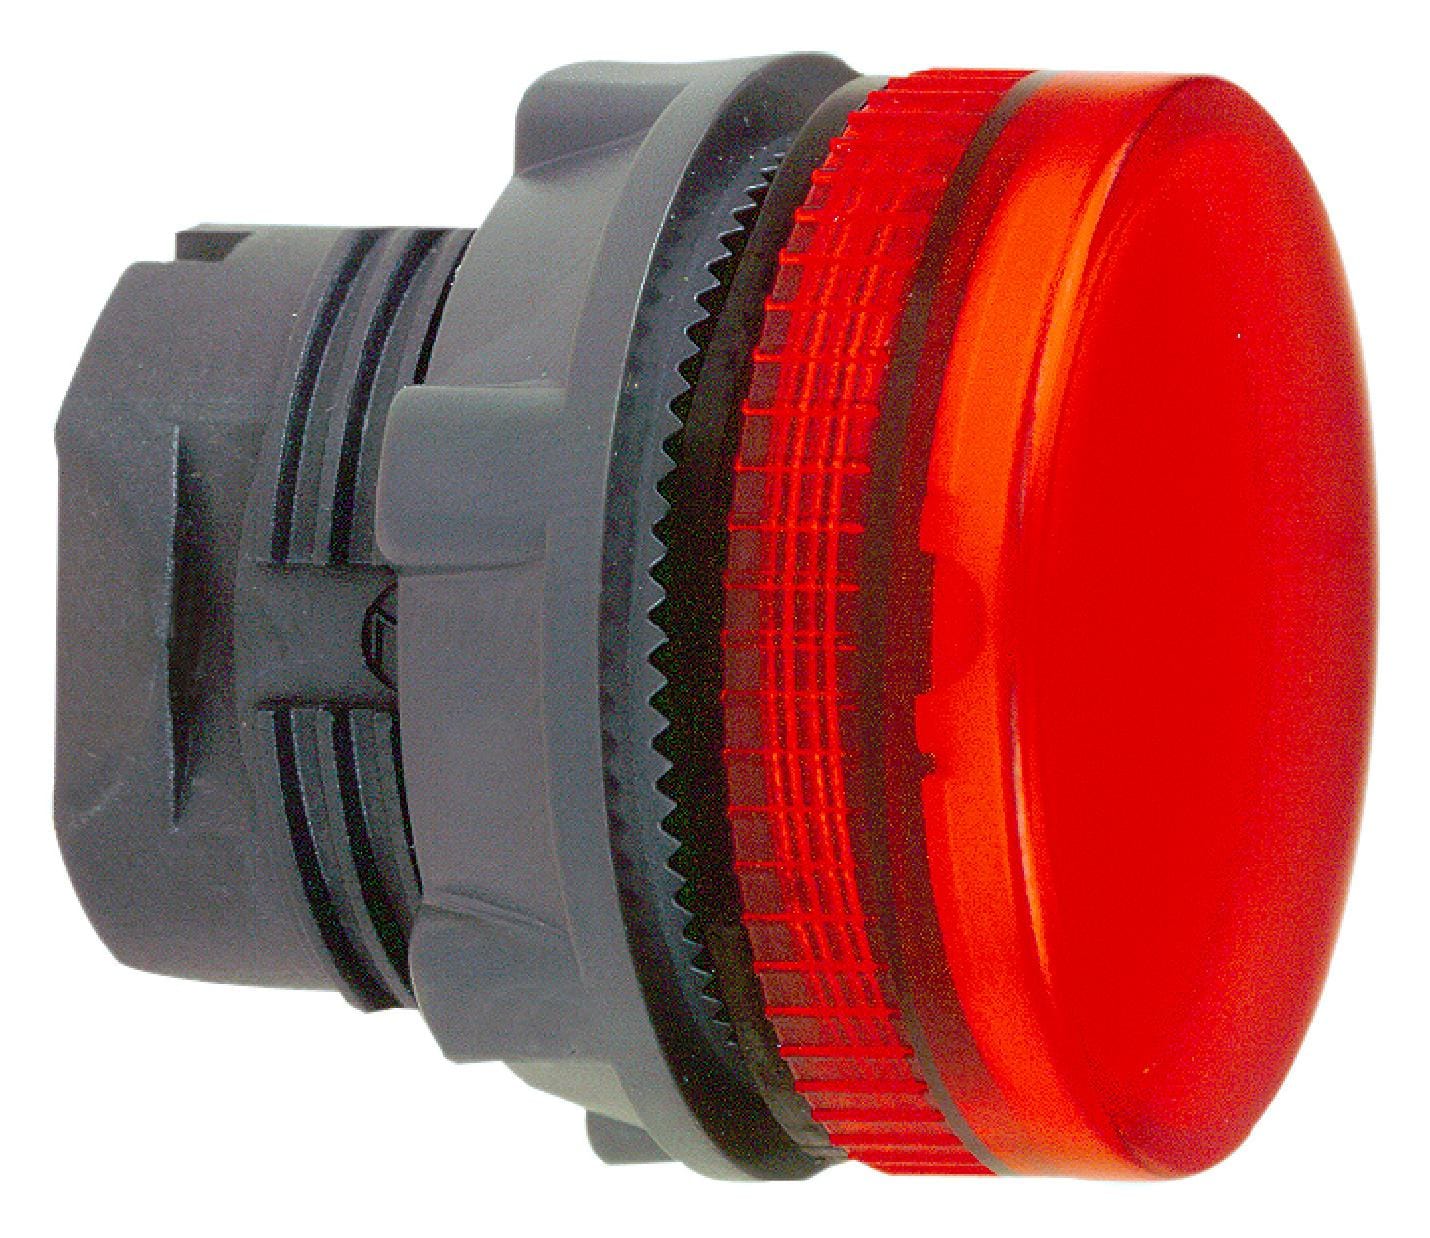 SCHNEIDER ELECTRIC Indicator Lenses ZB5AV043S PILOT LIGHT HEAD, RED, ROUND, 22MM SCHNEIDER ELECTRIC 3115341 ZB5AV043S